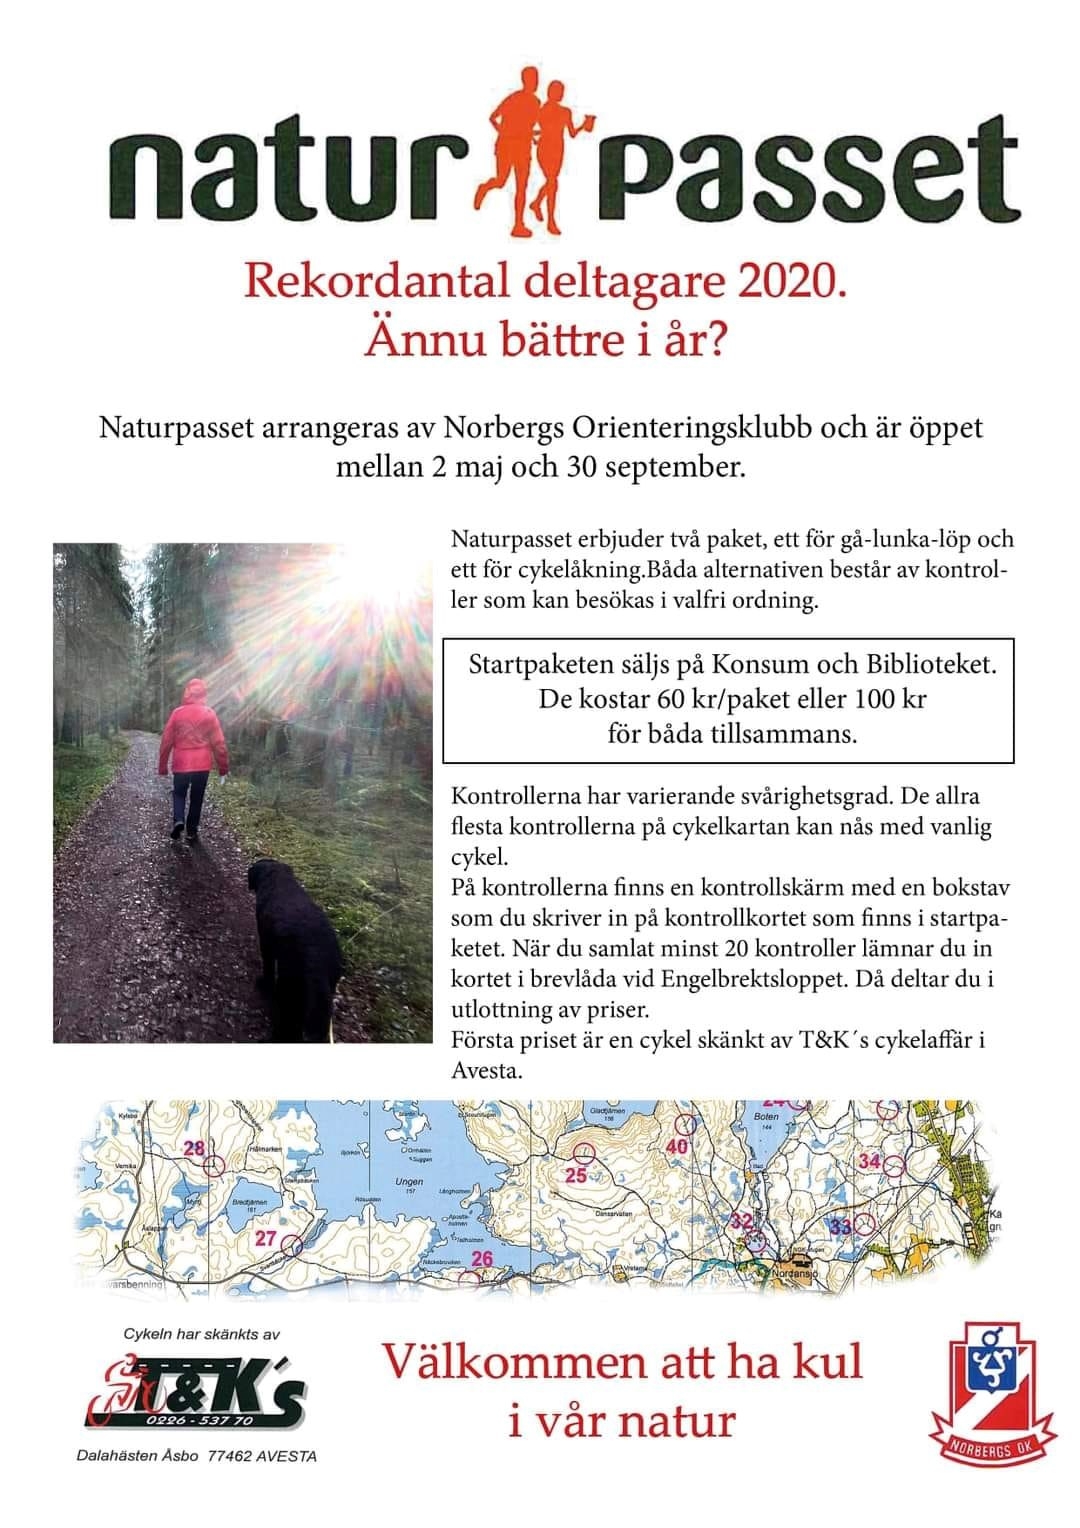 Naturpasset 2021 Annons.jpg